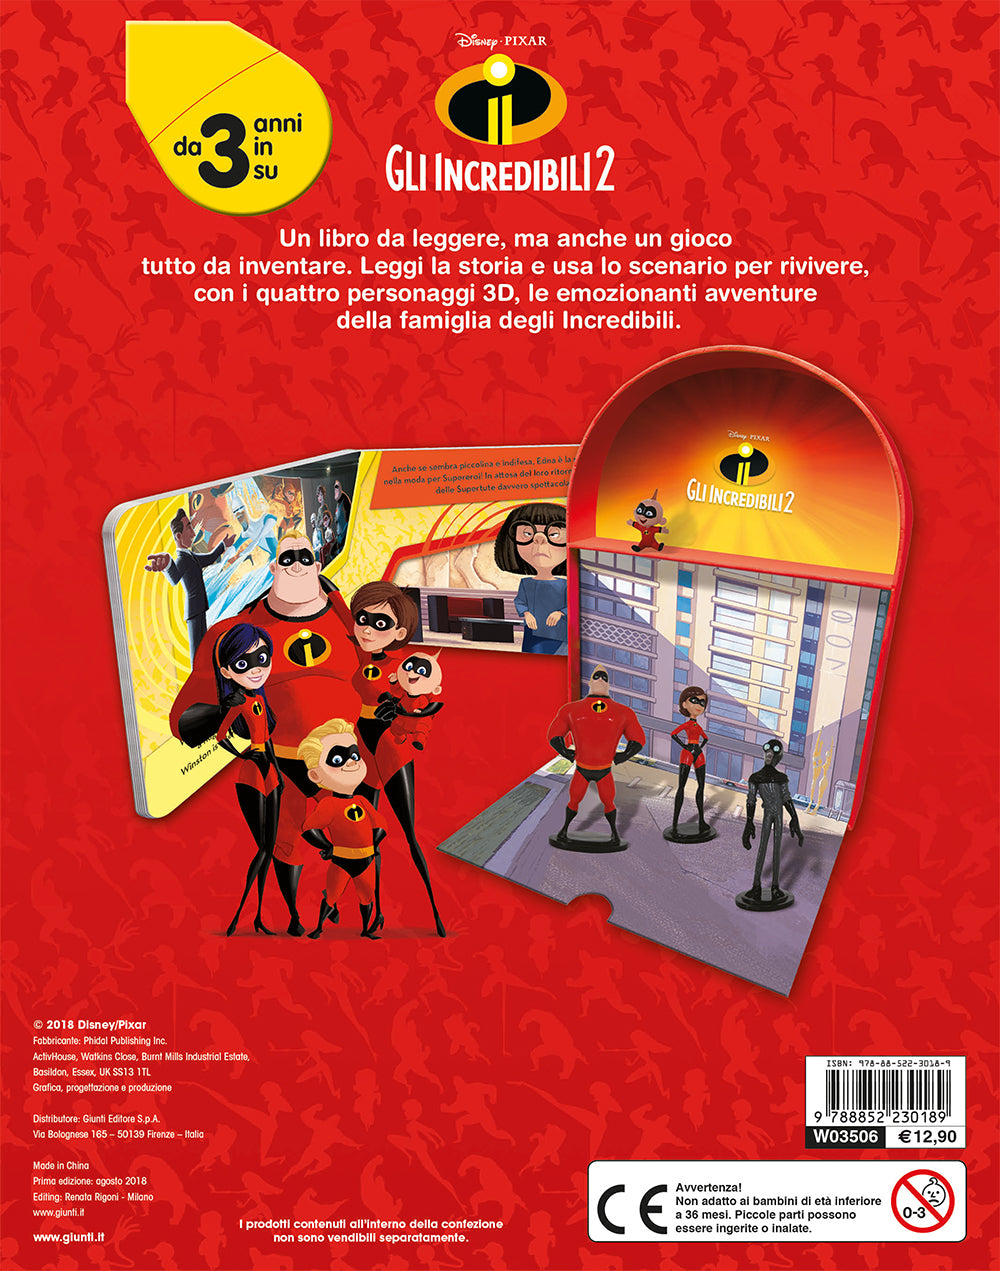 Gli Incredibili 2 - LibroGiocaKit::Con 4 personaggi 3D e 1 scenario per giocare!